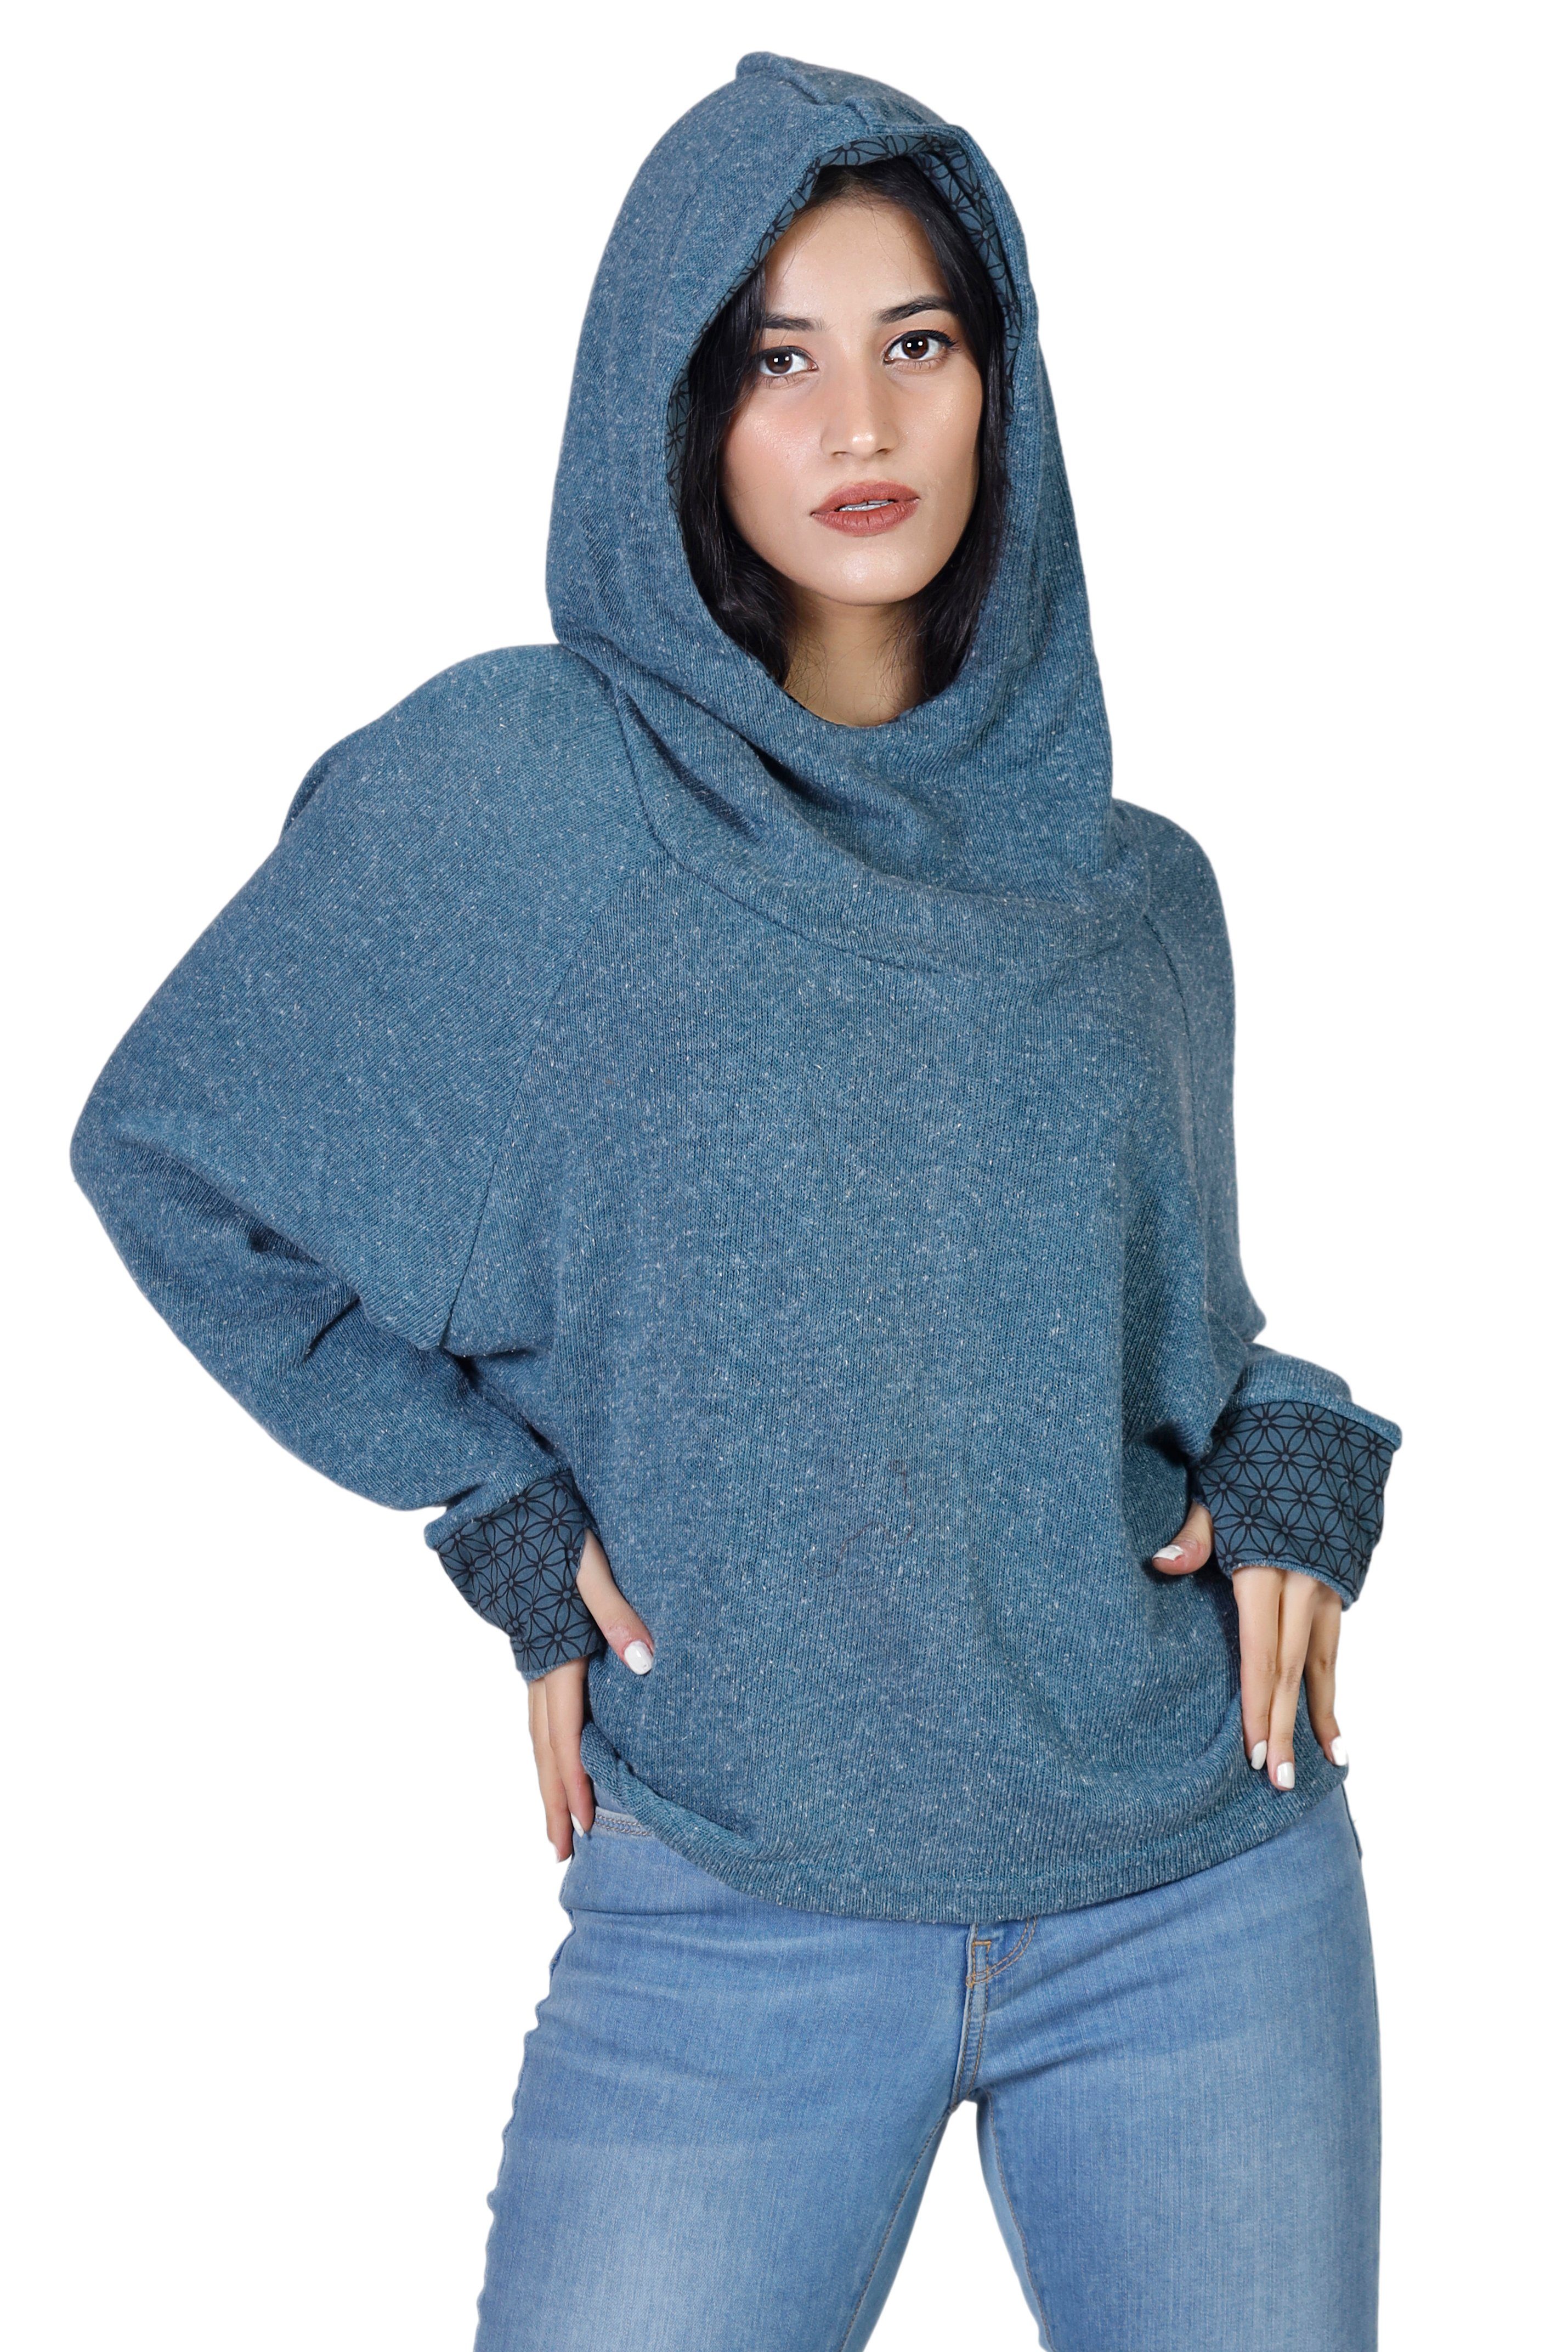 Bekleidung Hoody, alternative Kapuzenpullover Longsleeve Pullover, taubenblau Guru-Shop Sweatshirt, -..